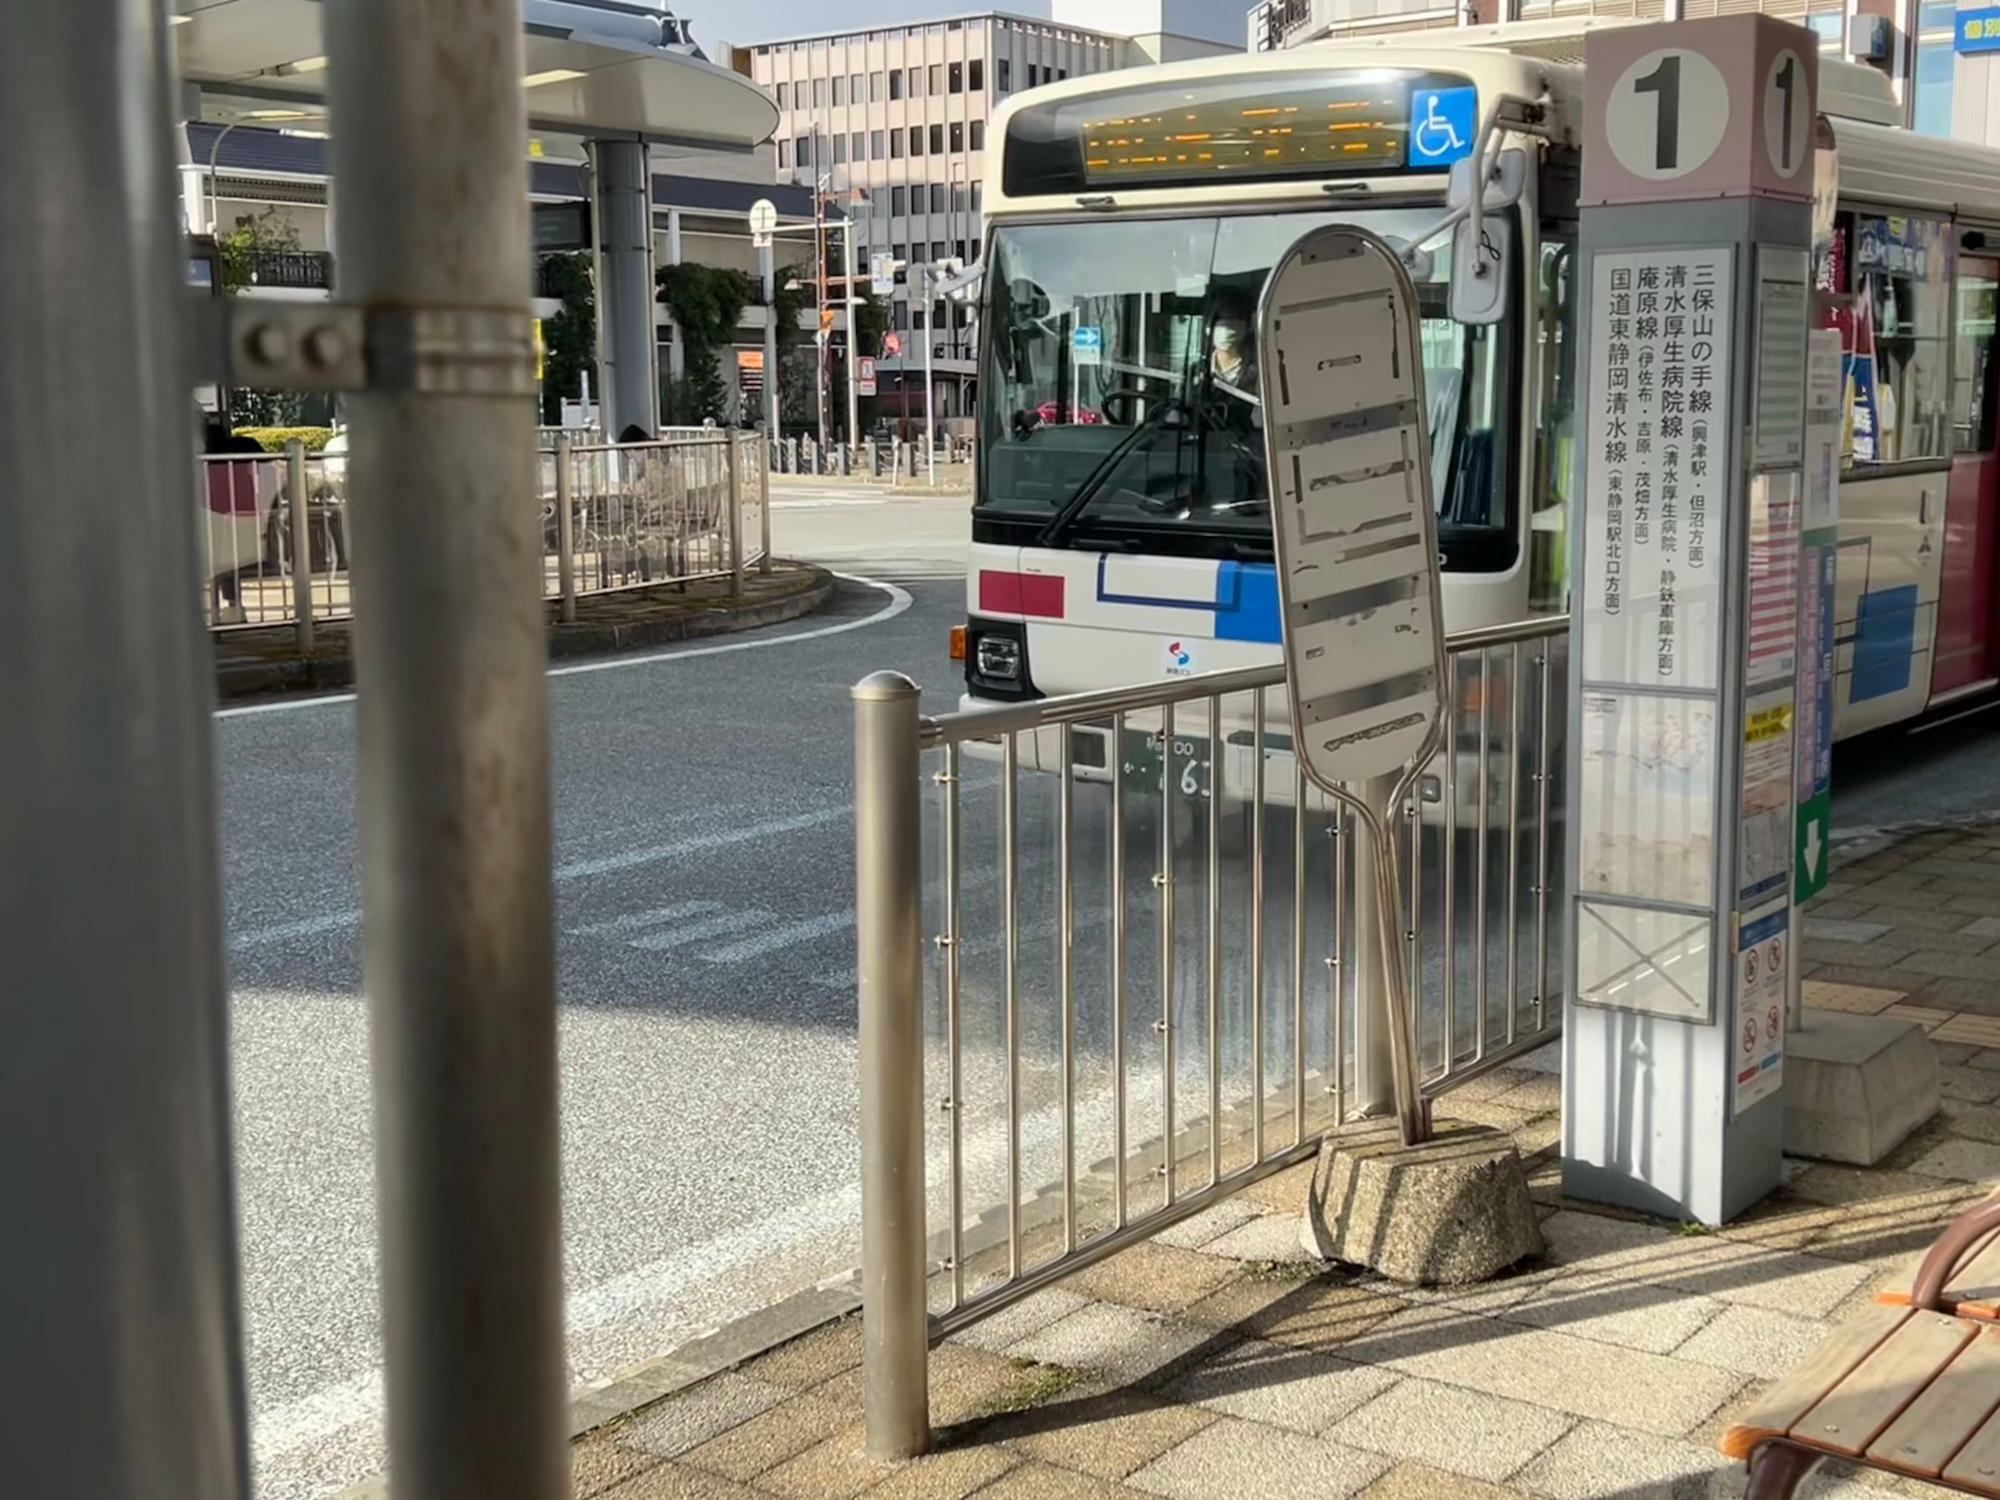 球場最寄りの「清水庵原球場入口」行きのバスは「１番」のバス停から